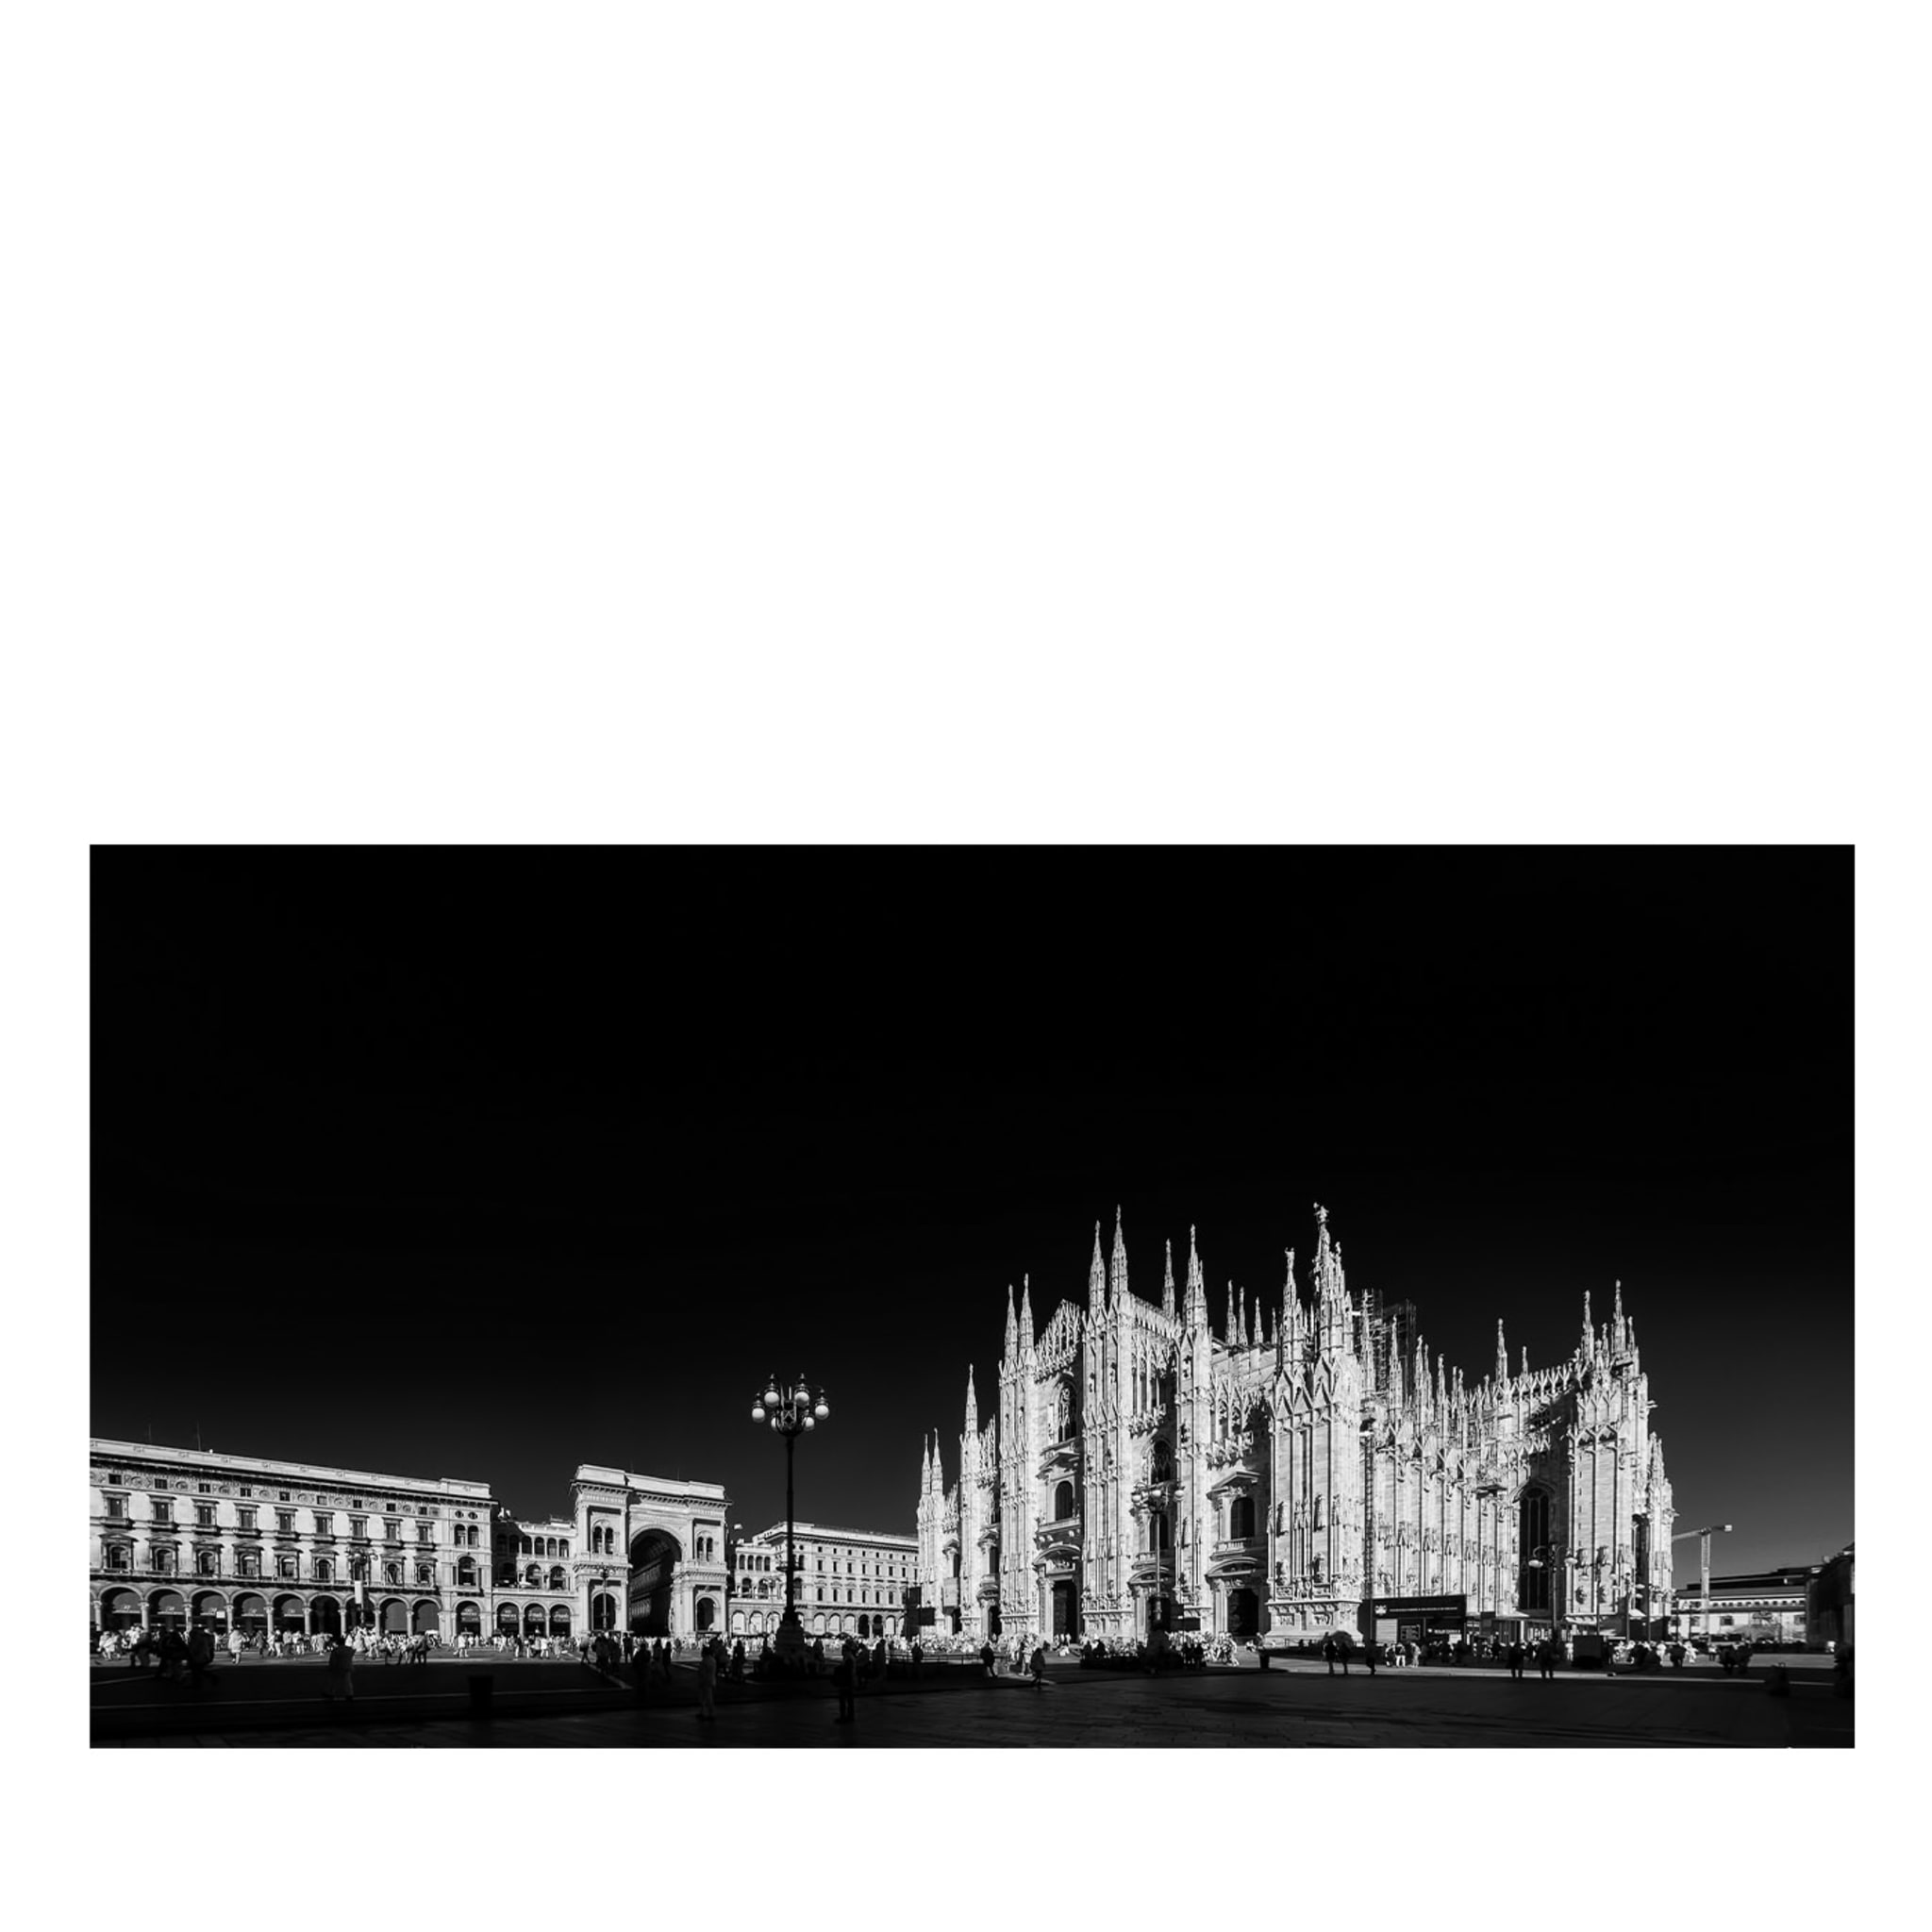 Piazza del Duomo Photograph - Main view